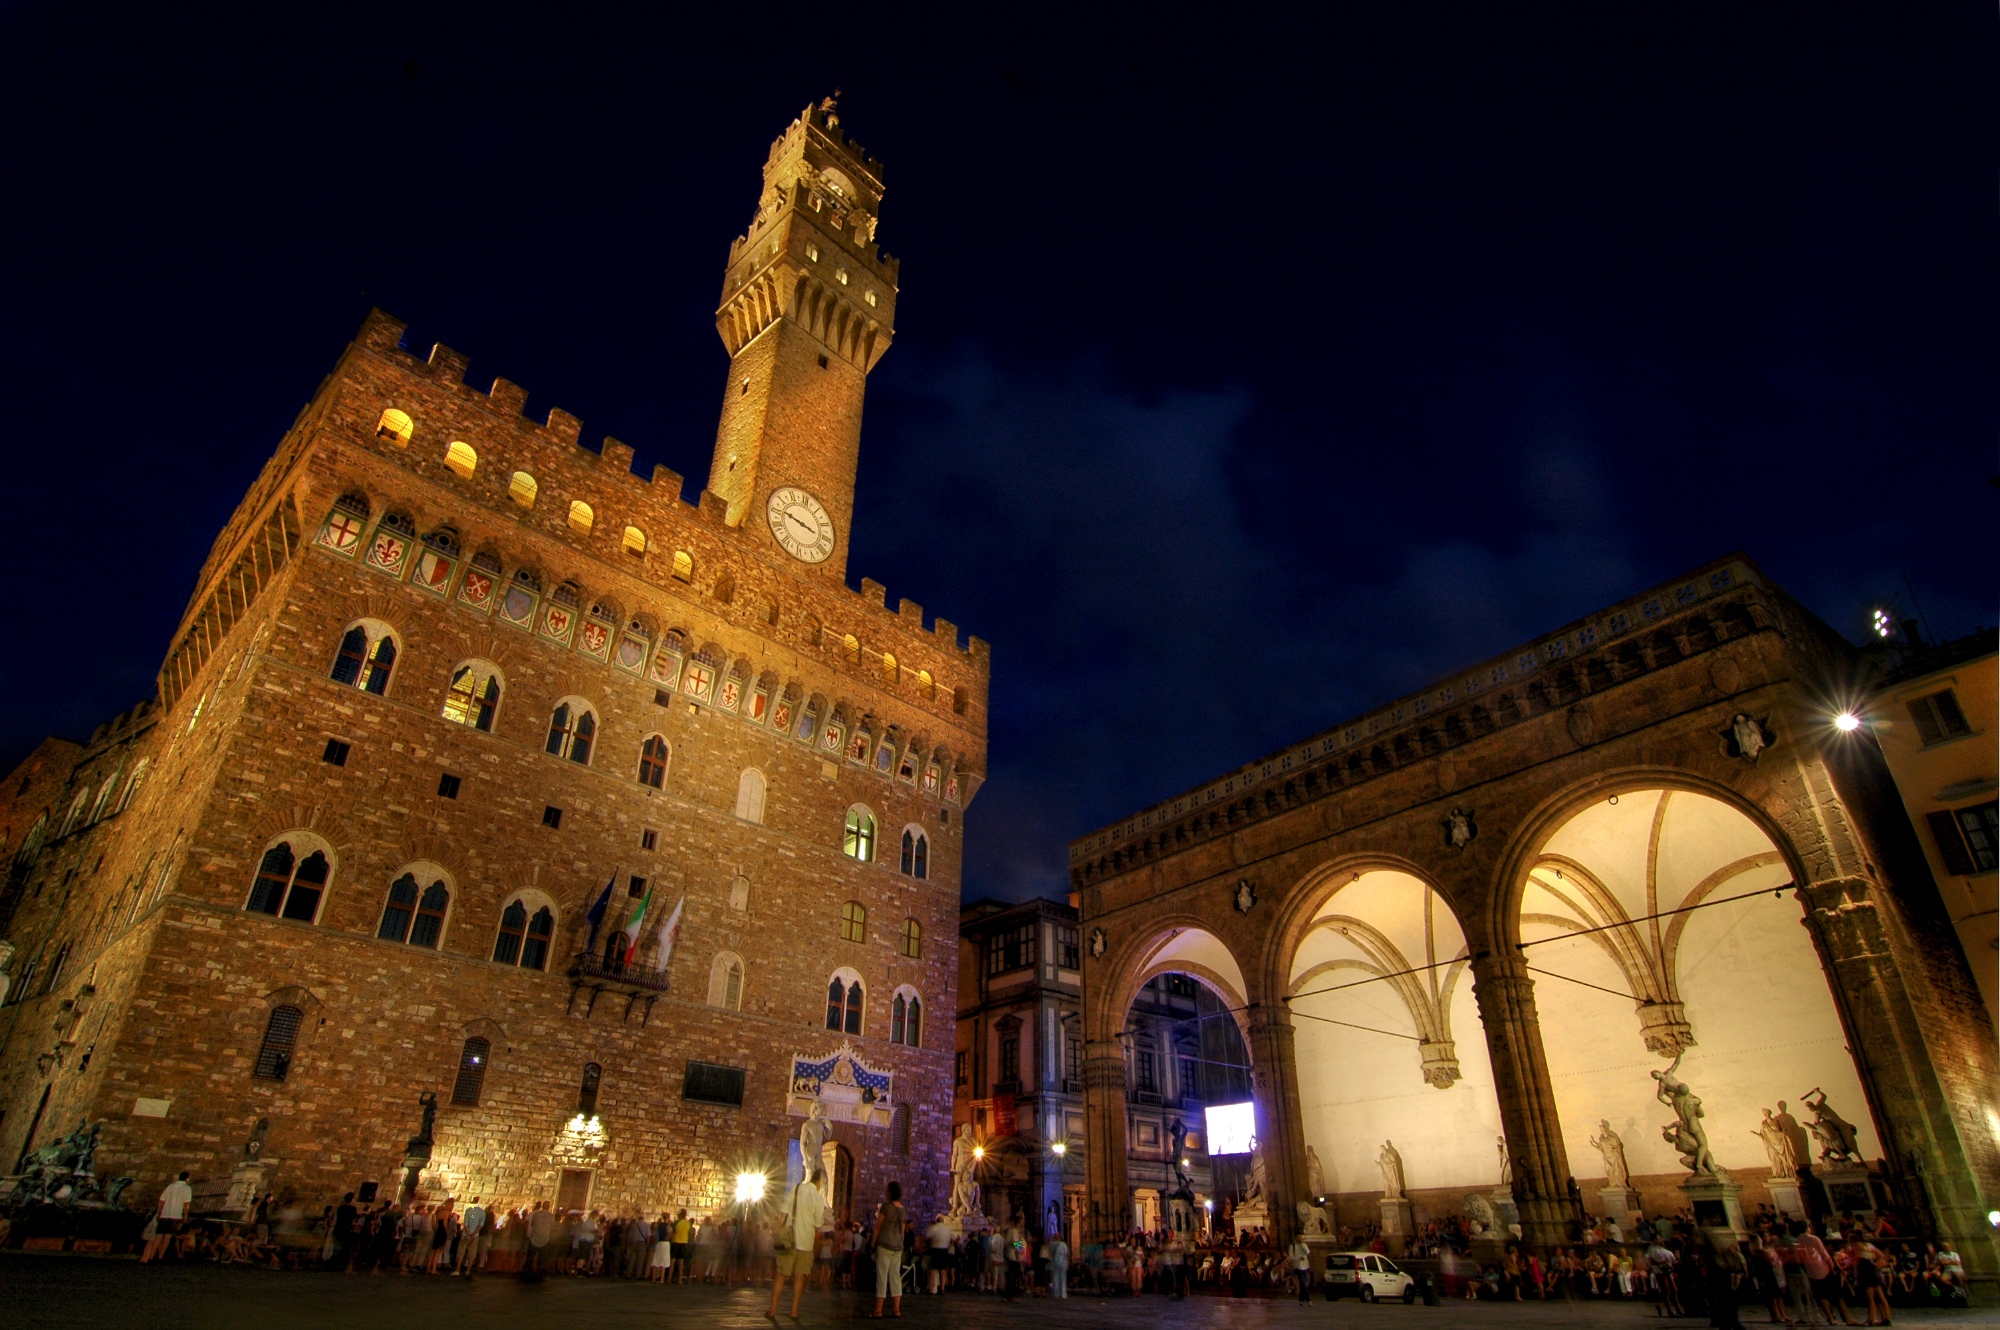 Palazzo Vecchio & Loggia dei Lanzi, Florence